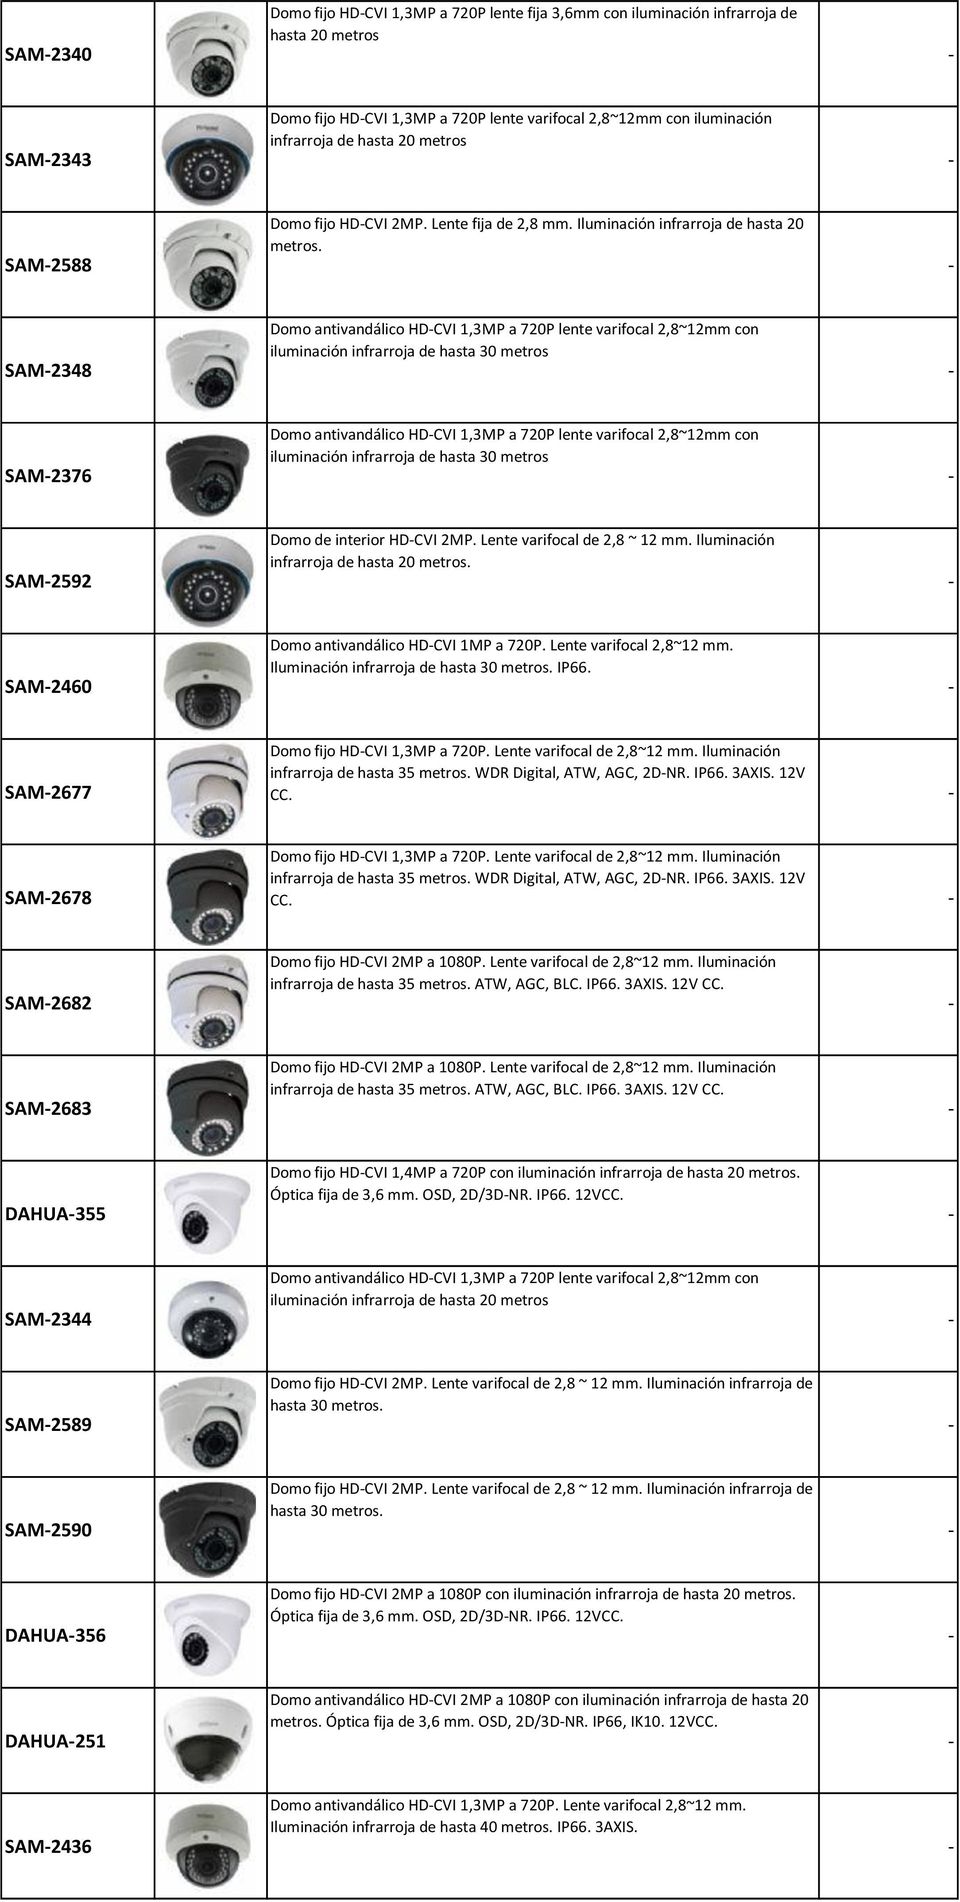 SAM2348 Domo antivandálico HDCVI 1,3MP a 720P lente varifocal 2,8~12mm con iluminación infrarroja de hasta 30 metros SAM2376 Domo antivandálico HDCVI 1,3MP a 720P lente varifocal 2,8~12mm con